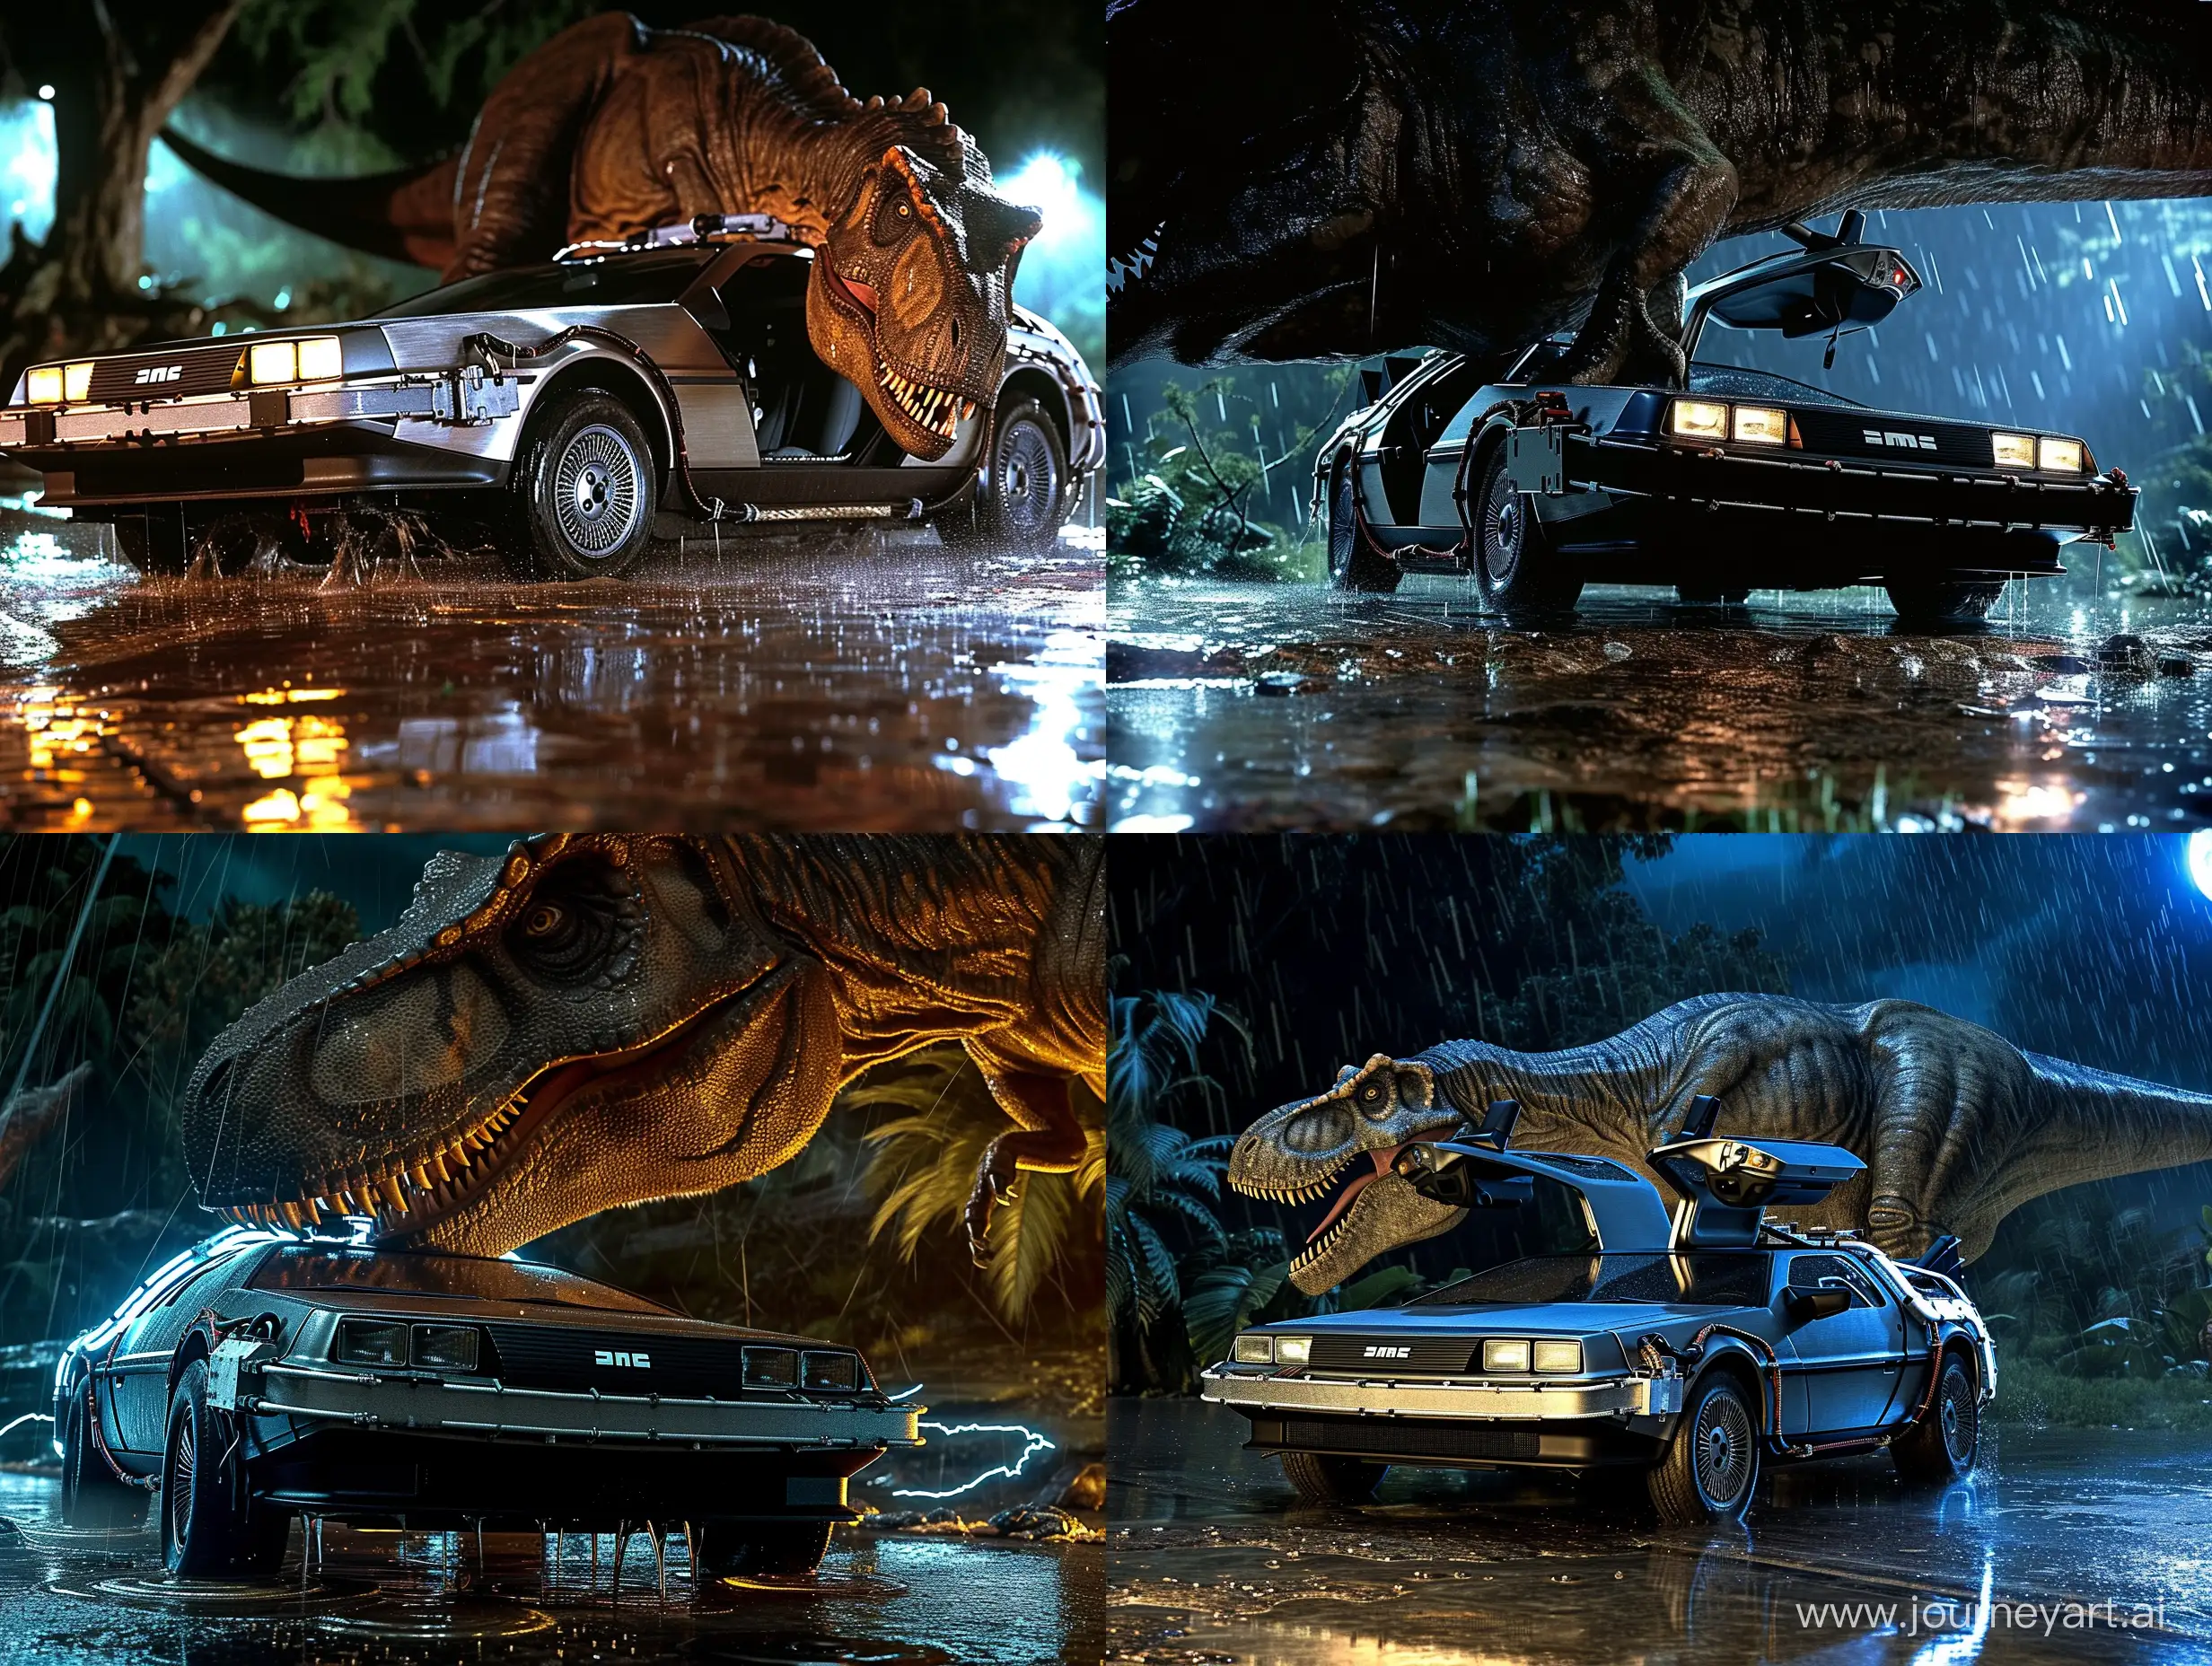 Jurassic-Park-TRex-Encounter-with-DeLorean-Time-Machine-in-Night-Rain